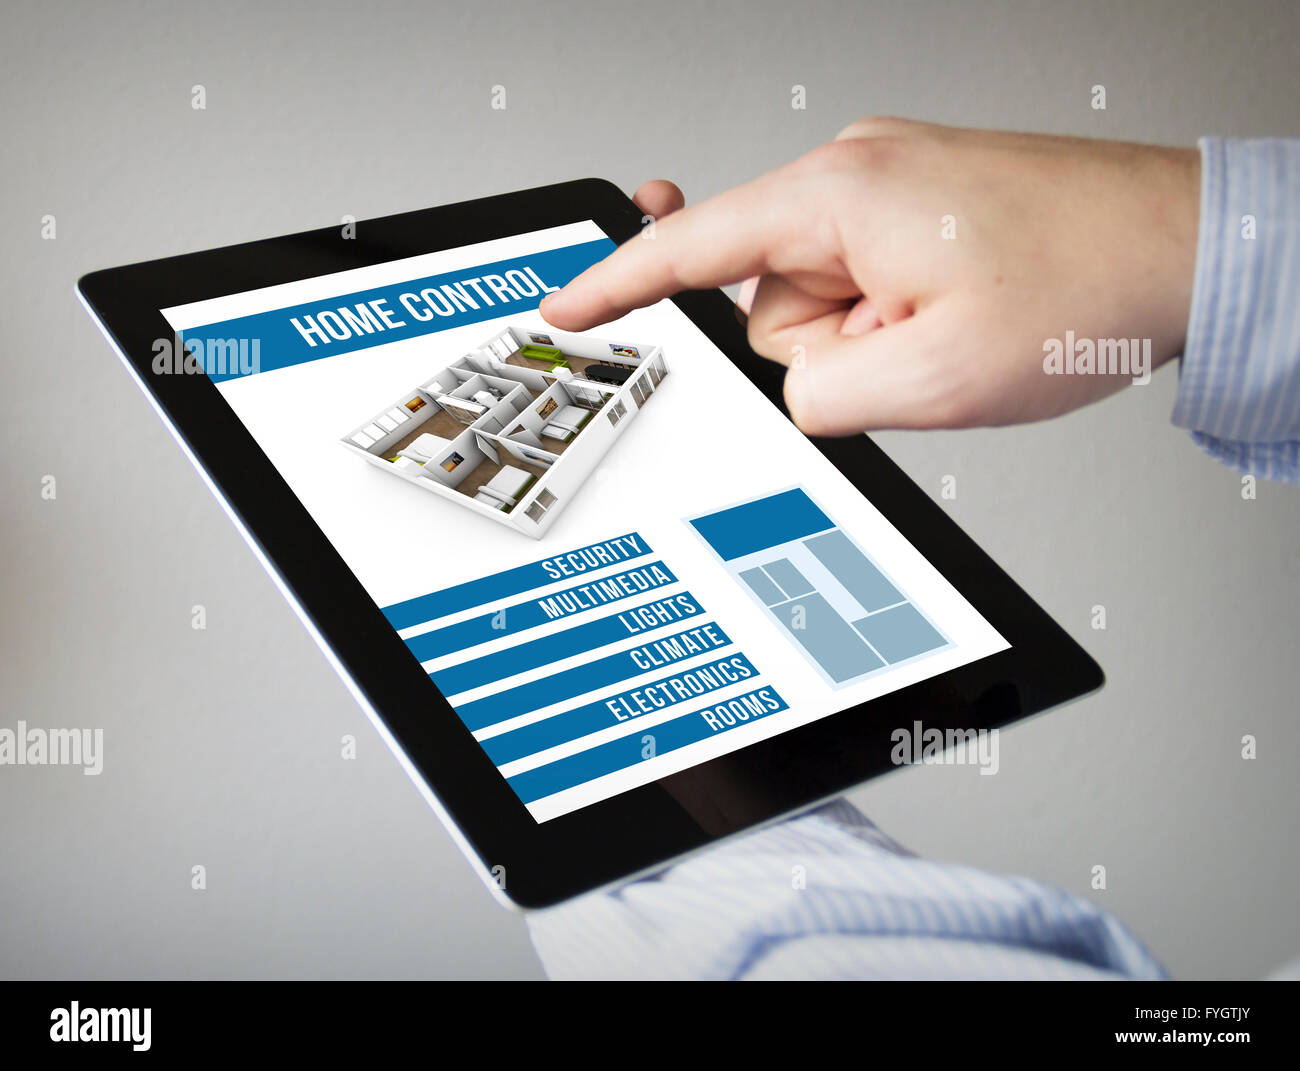 Nouvelles technologies concept : les mains à l'écran tactile Tablet avec smart home control app Banque D'Images